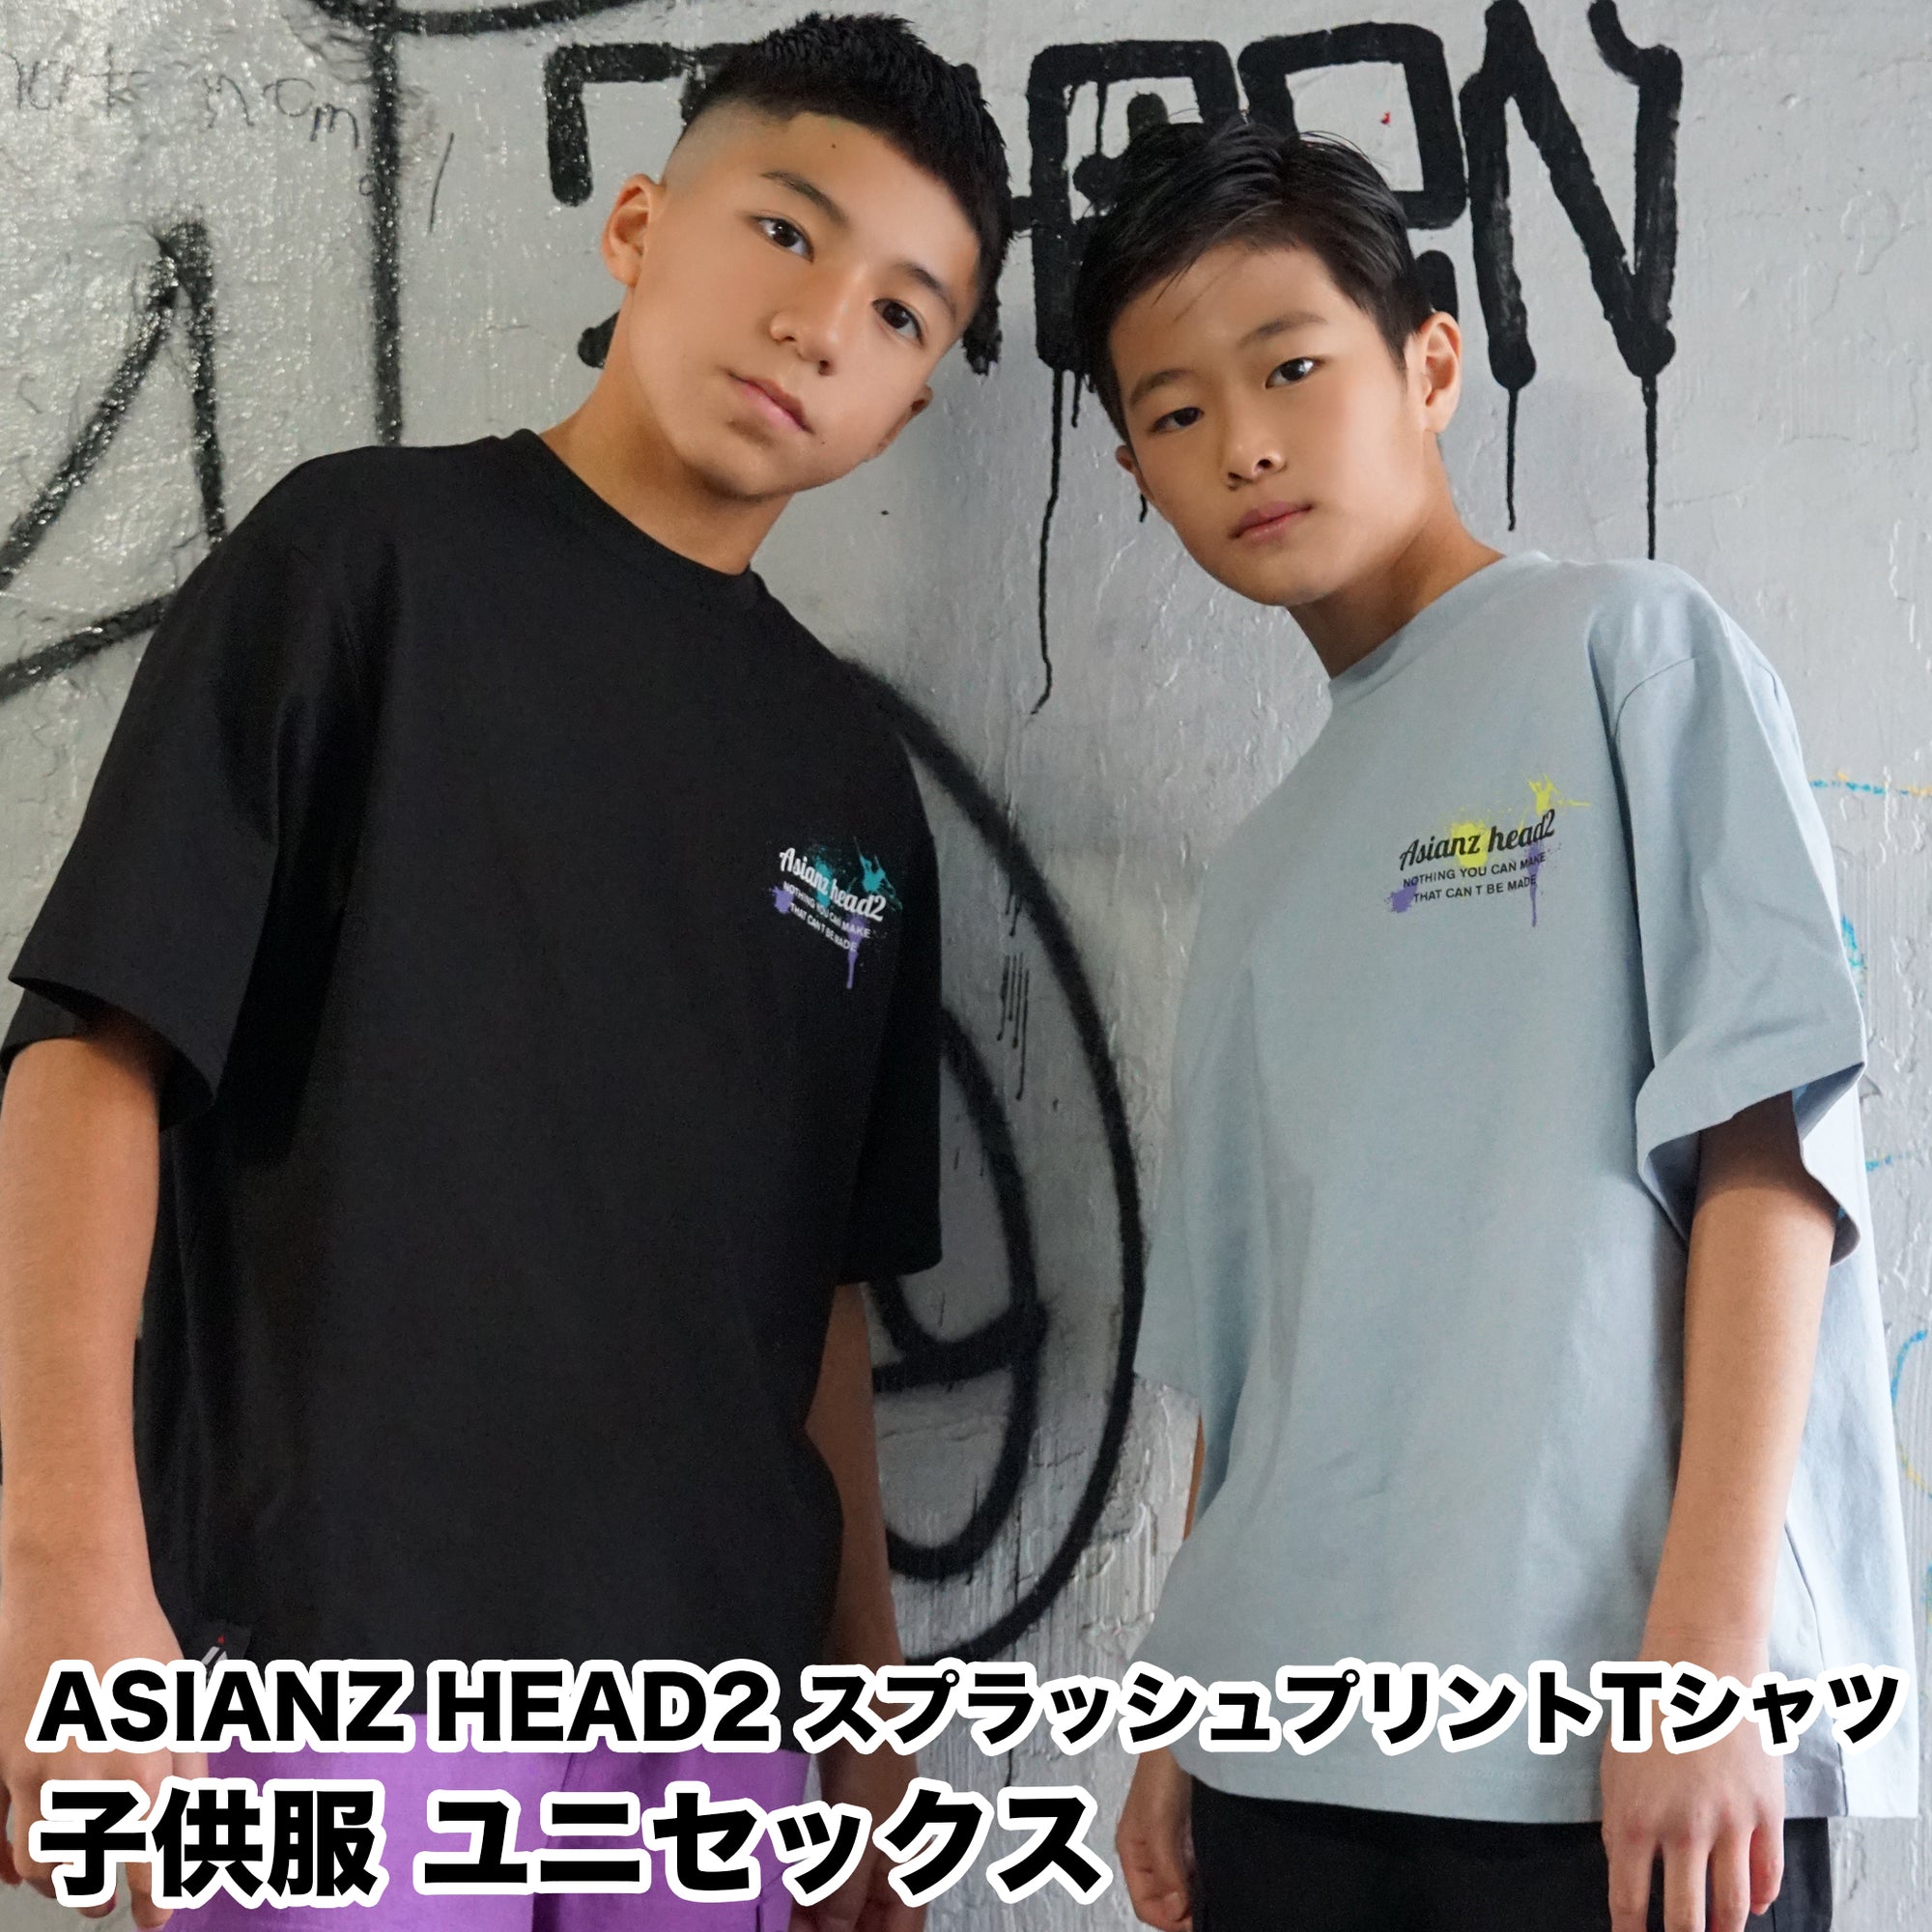 (40%オフ! セール商品) ASIANZ HEAD2 スプラッシュプリントTシャツ キッズ ウェアー